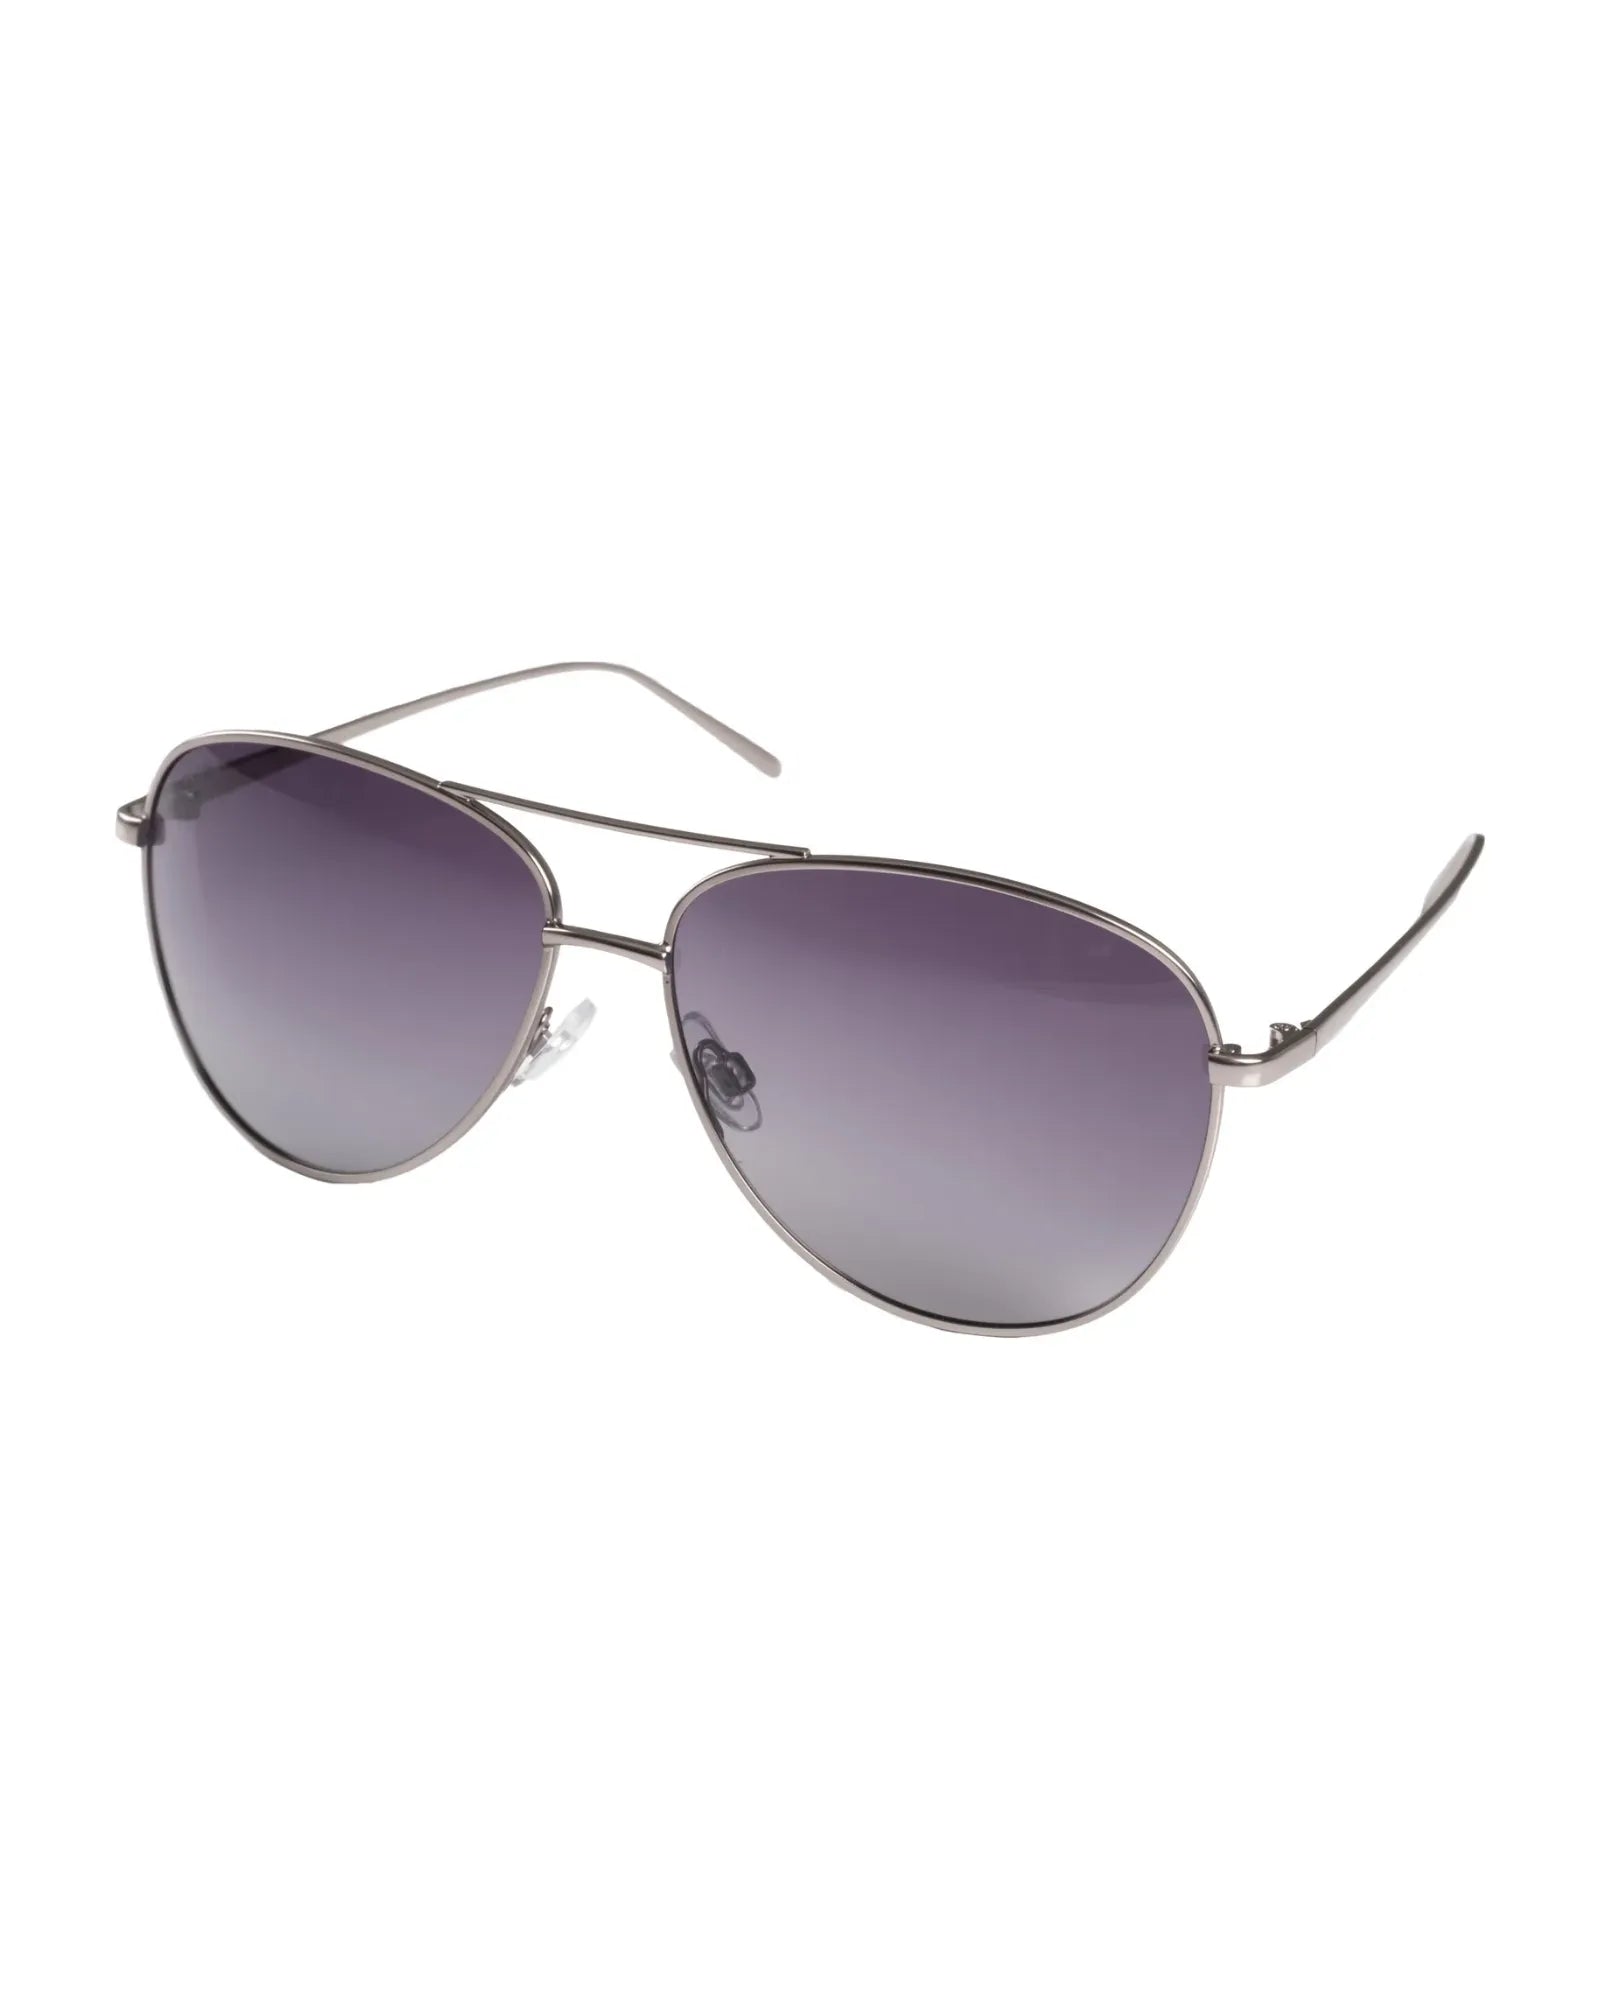 NANI Pilot Sunglasses - Grey/Hematite Plated